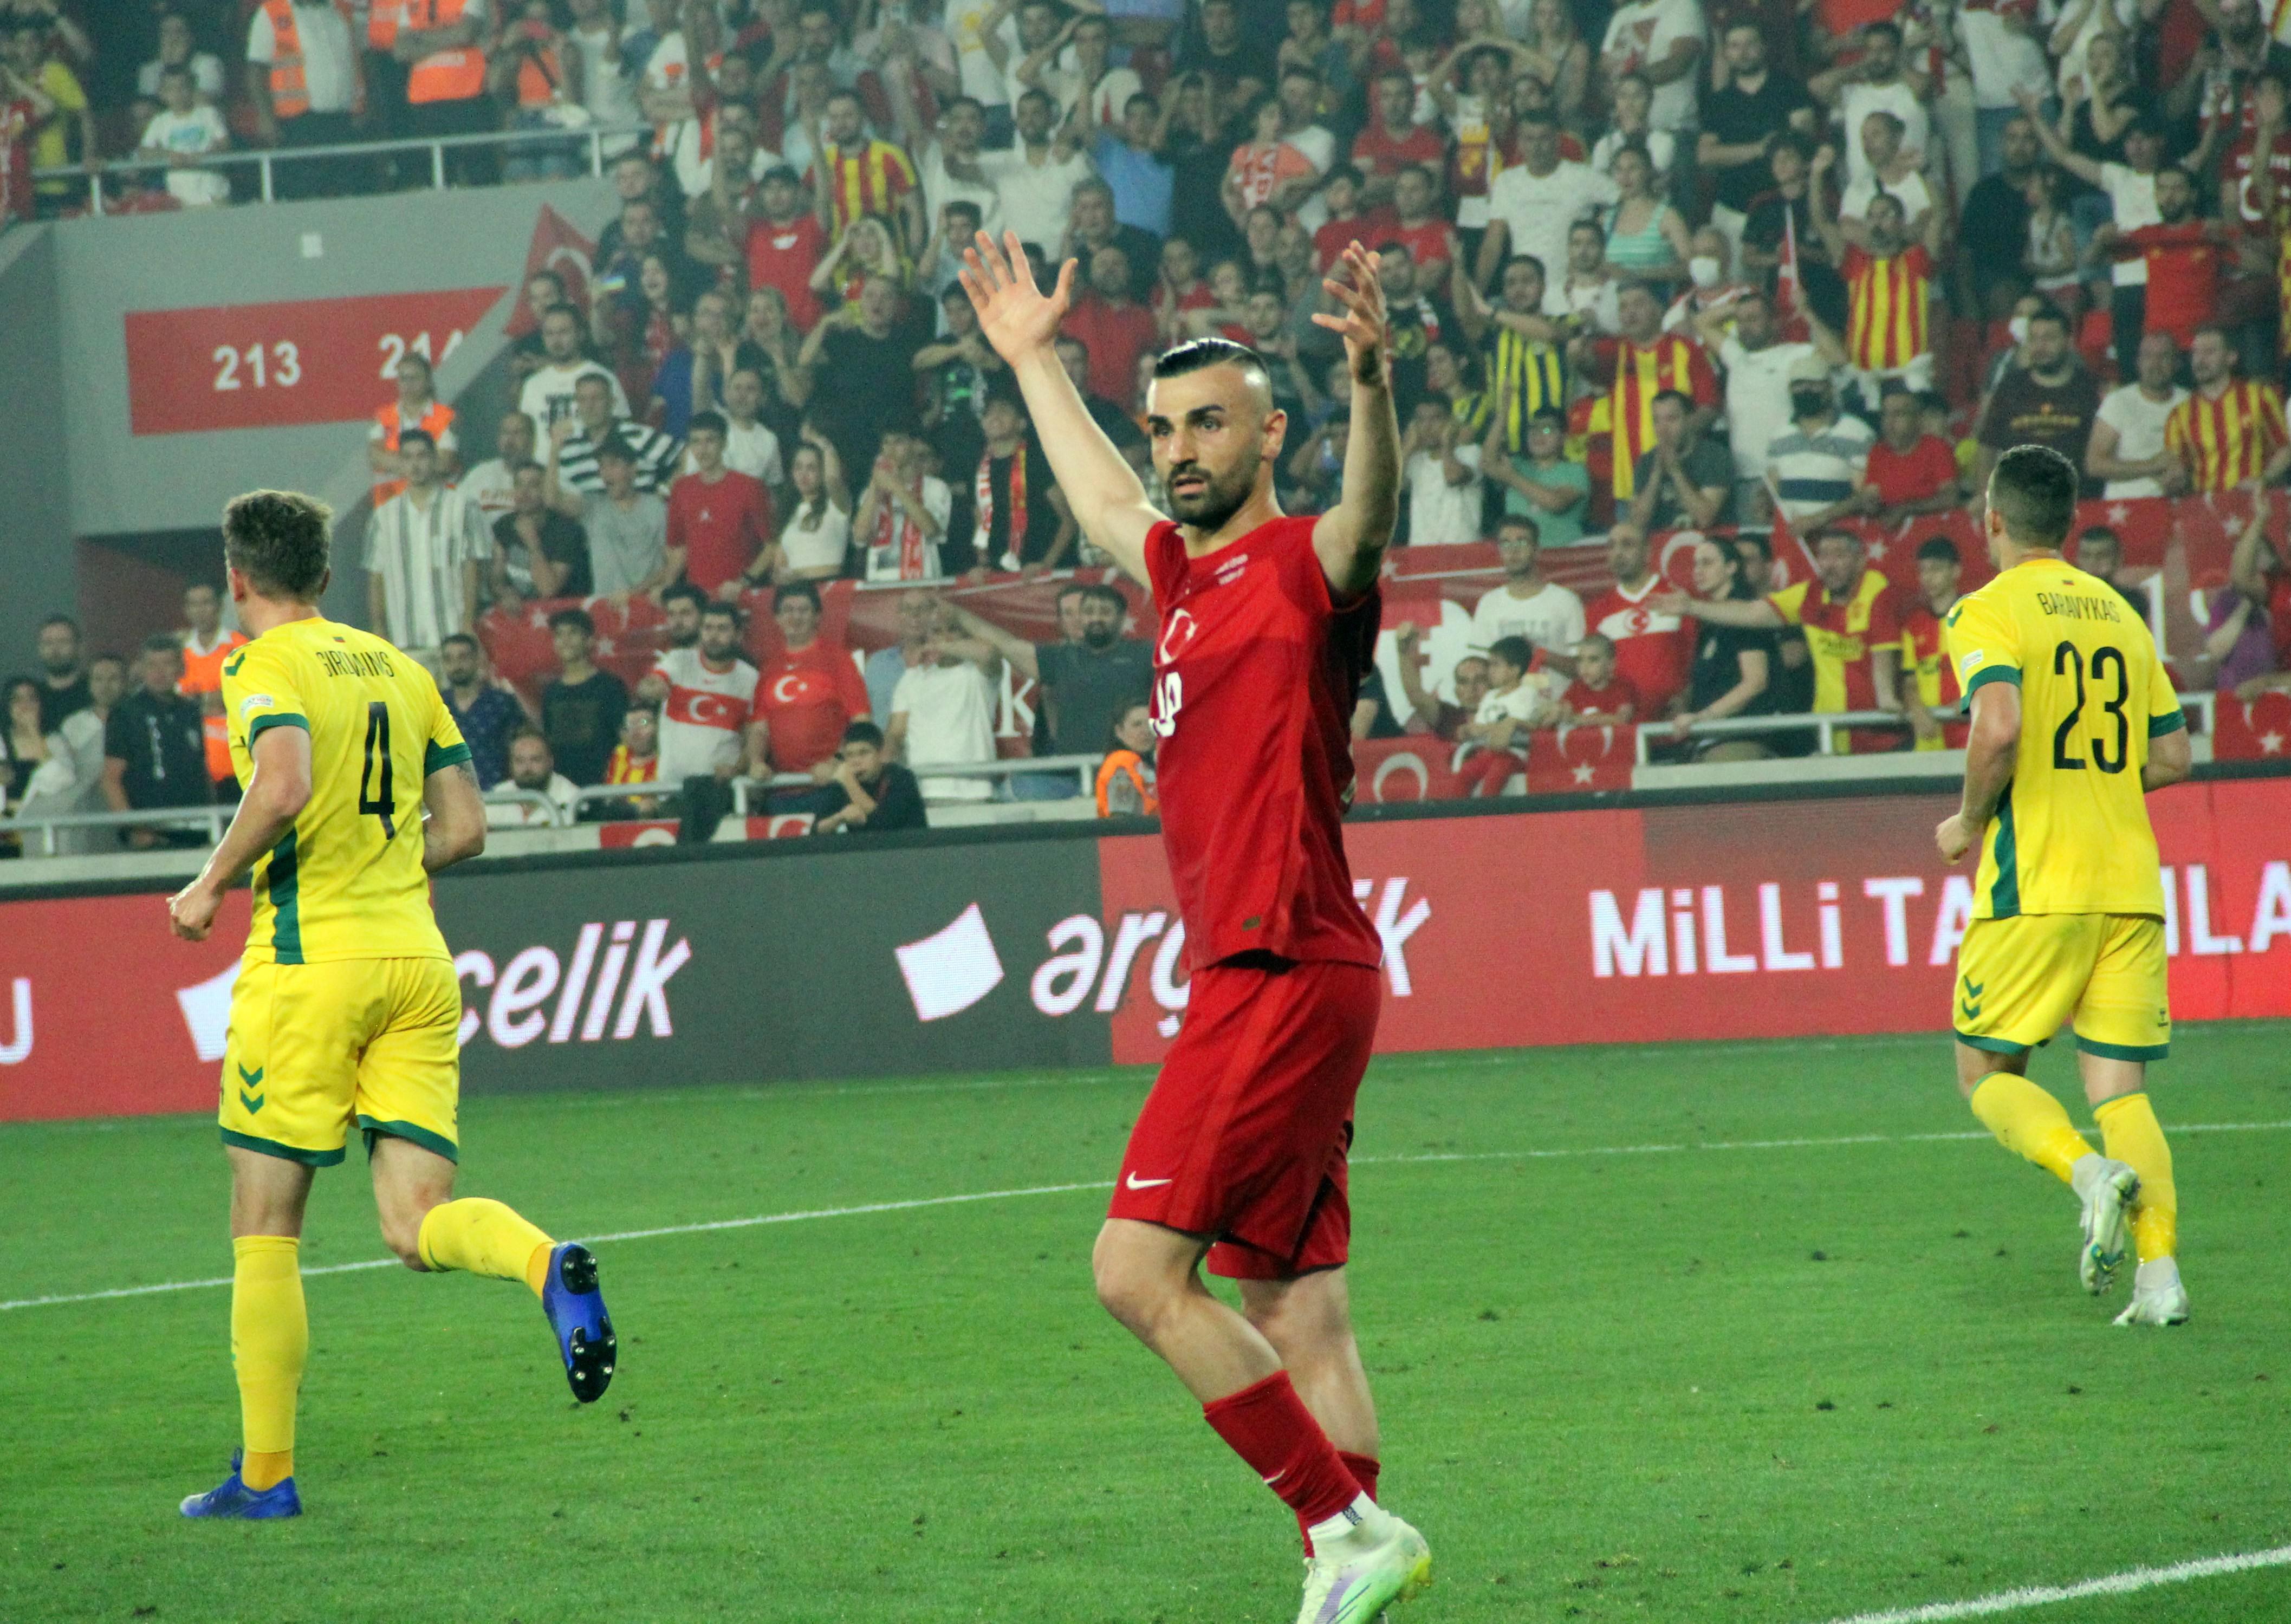 (ÖZET) Türkiye - Litvanya maç sonucu: 2-0